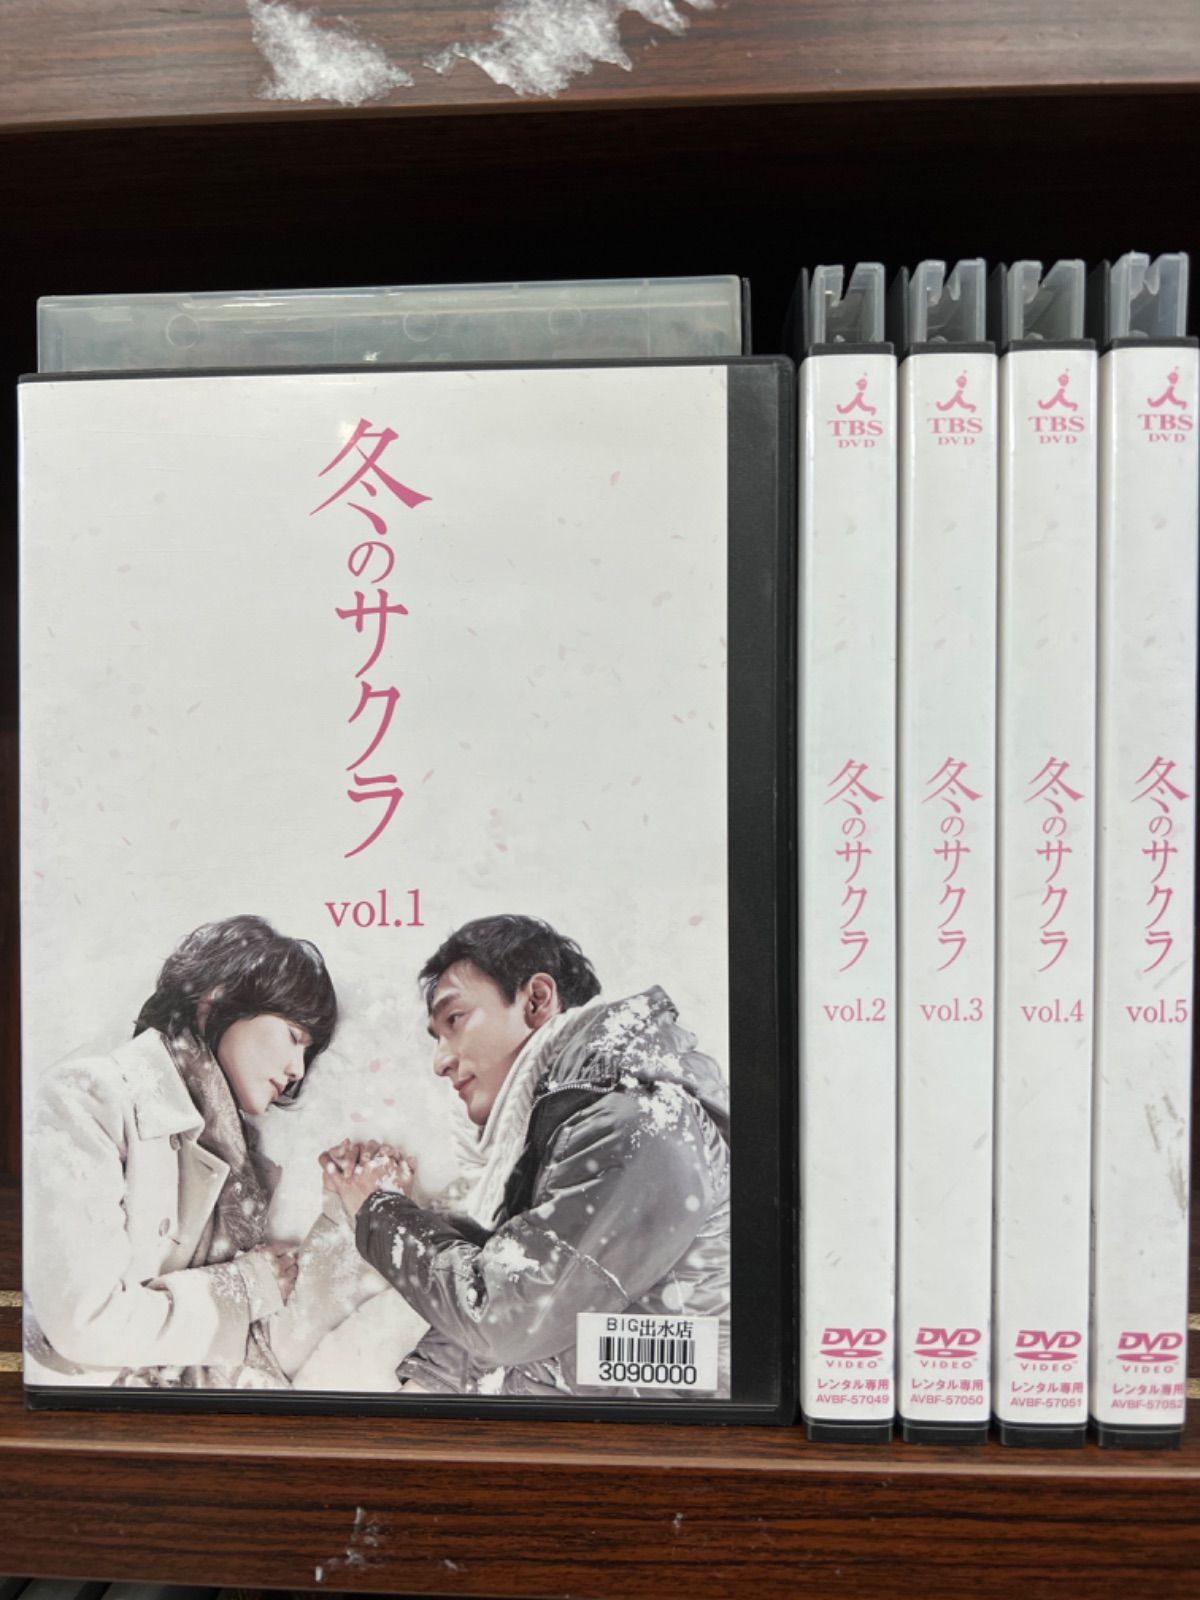 ◇高品質 冬のサクラ DVD vol.1〜5 fawe.org